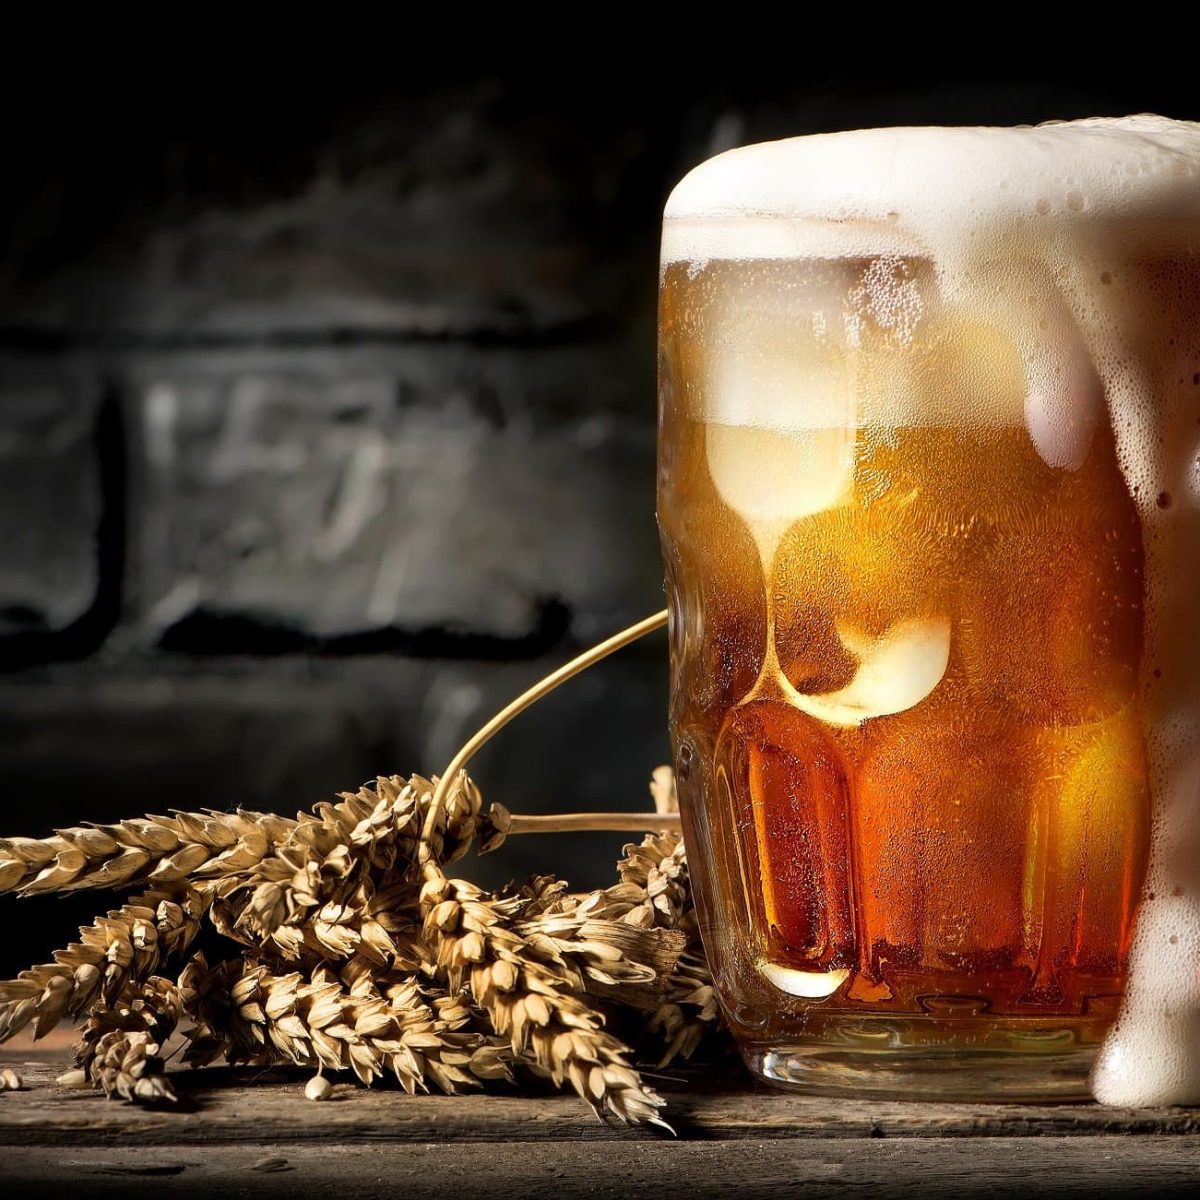 Sollte man abgelaufenes Bier noch trinken? Der Faktencheck